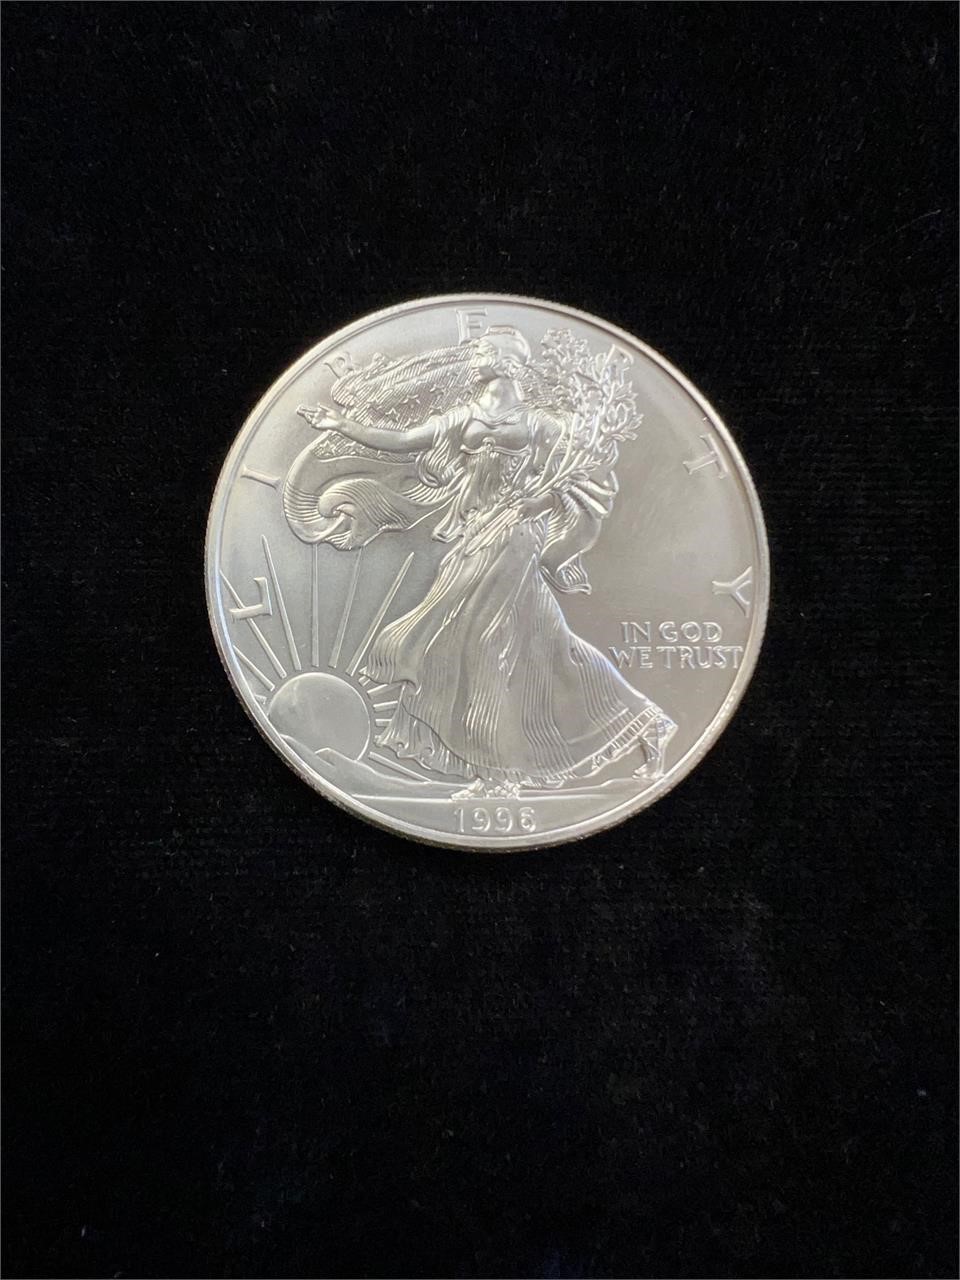 1996 American Silver Eagle 1 oz. .999 Fine Silver